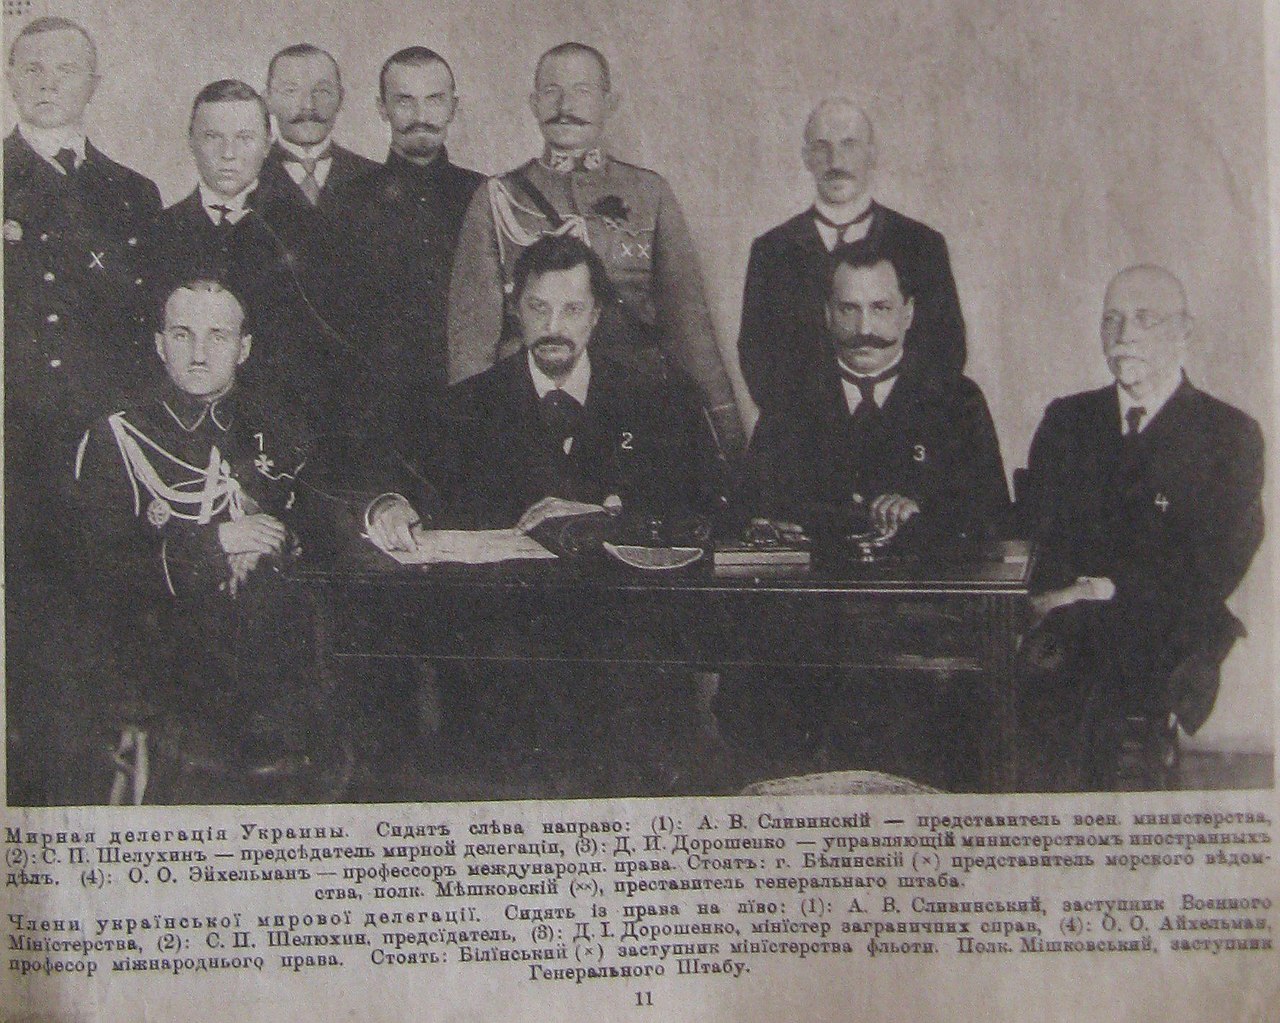 Ukrajinská delegace na mírových jednáních s Ruskou sovětskou republikou, 1918, Oko magazine (1918)